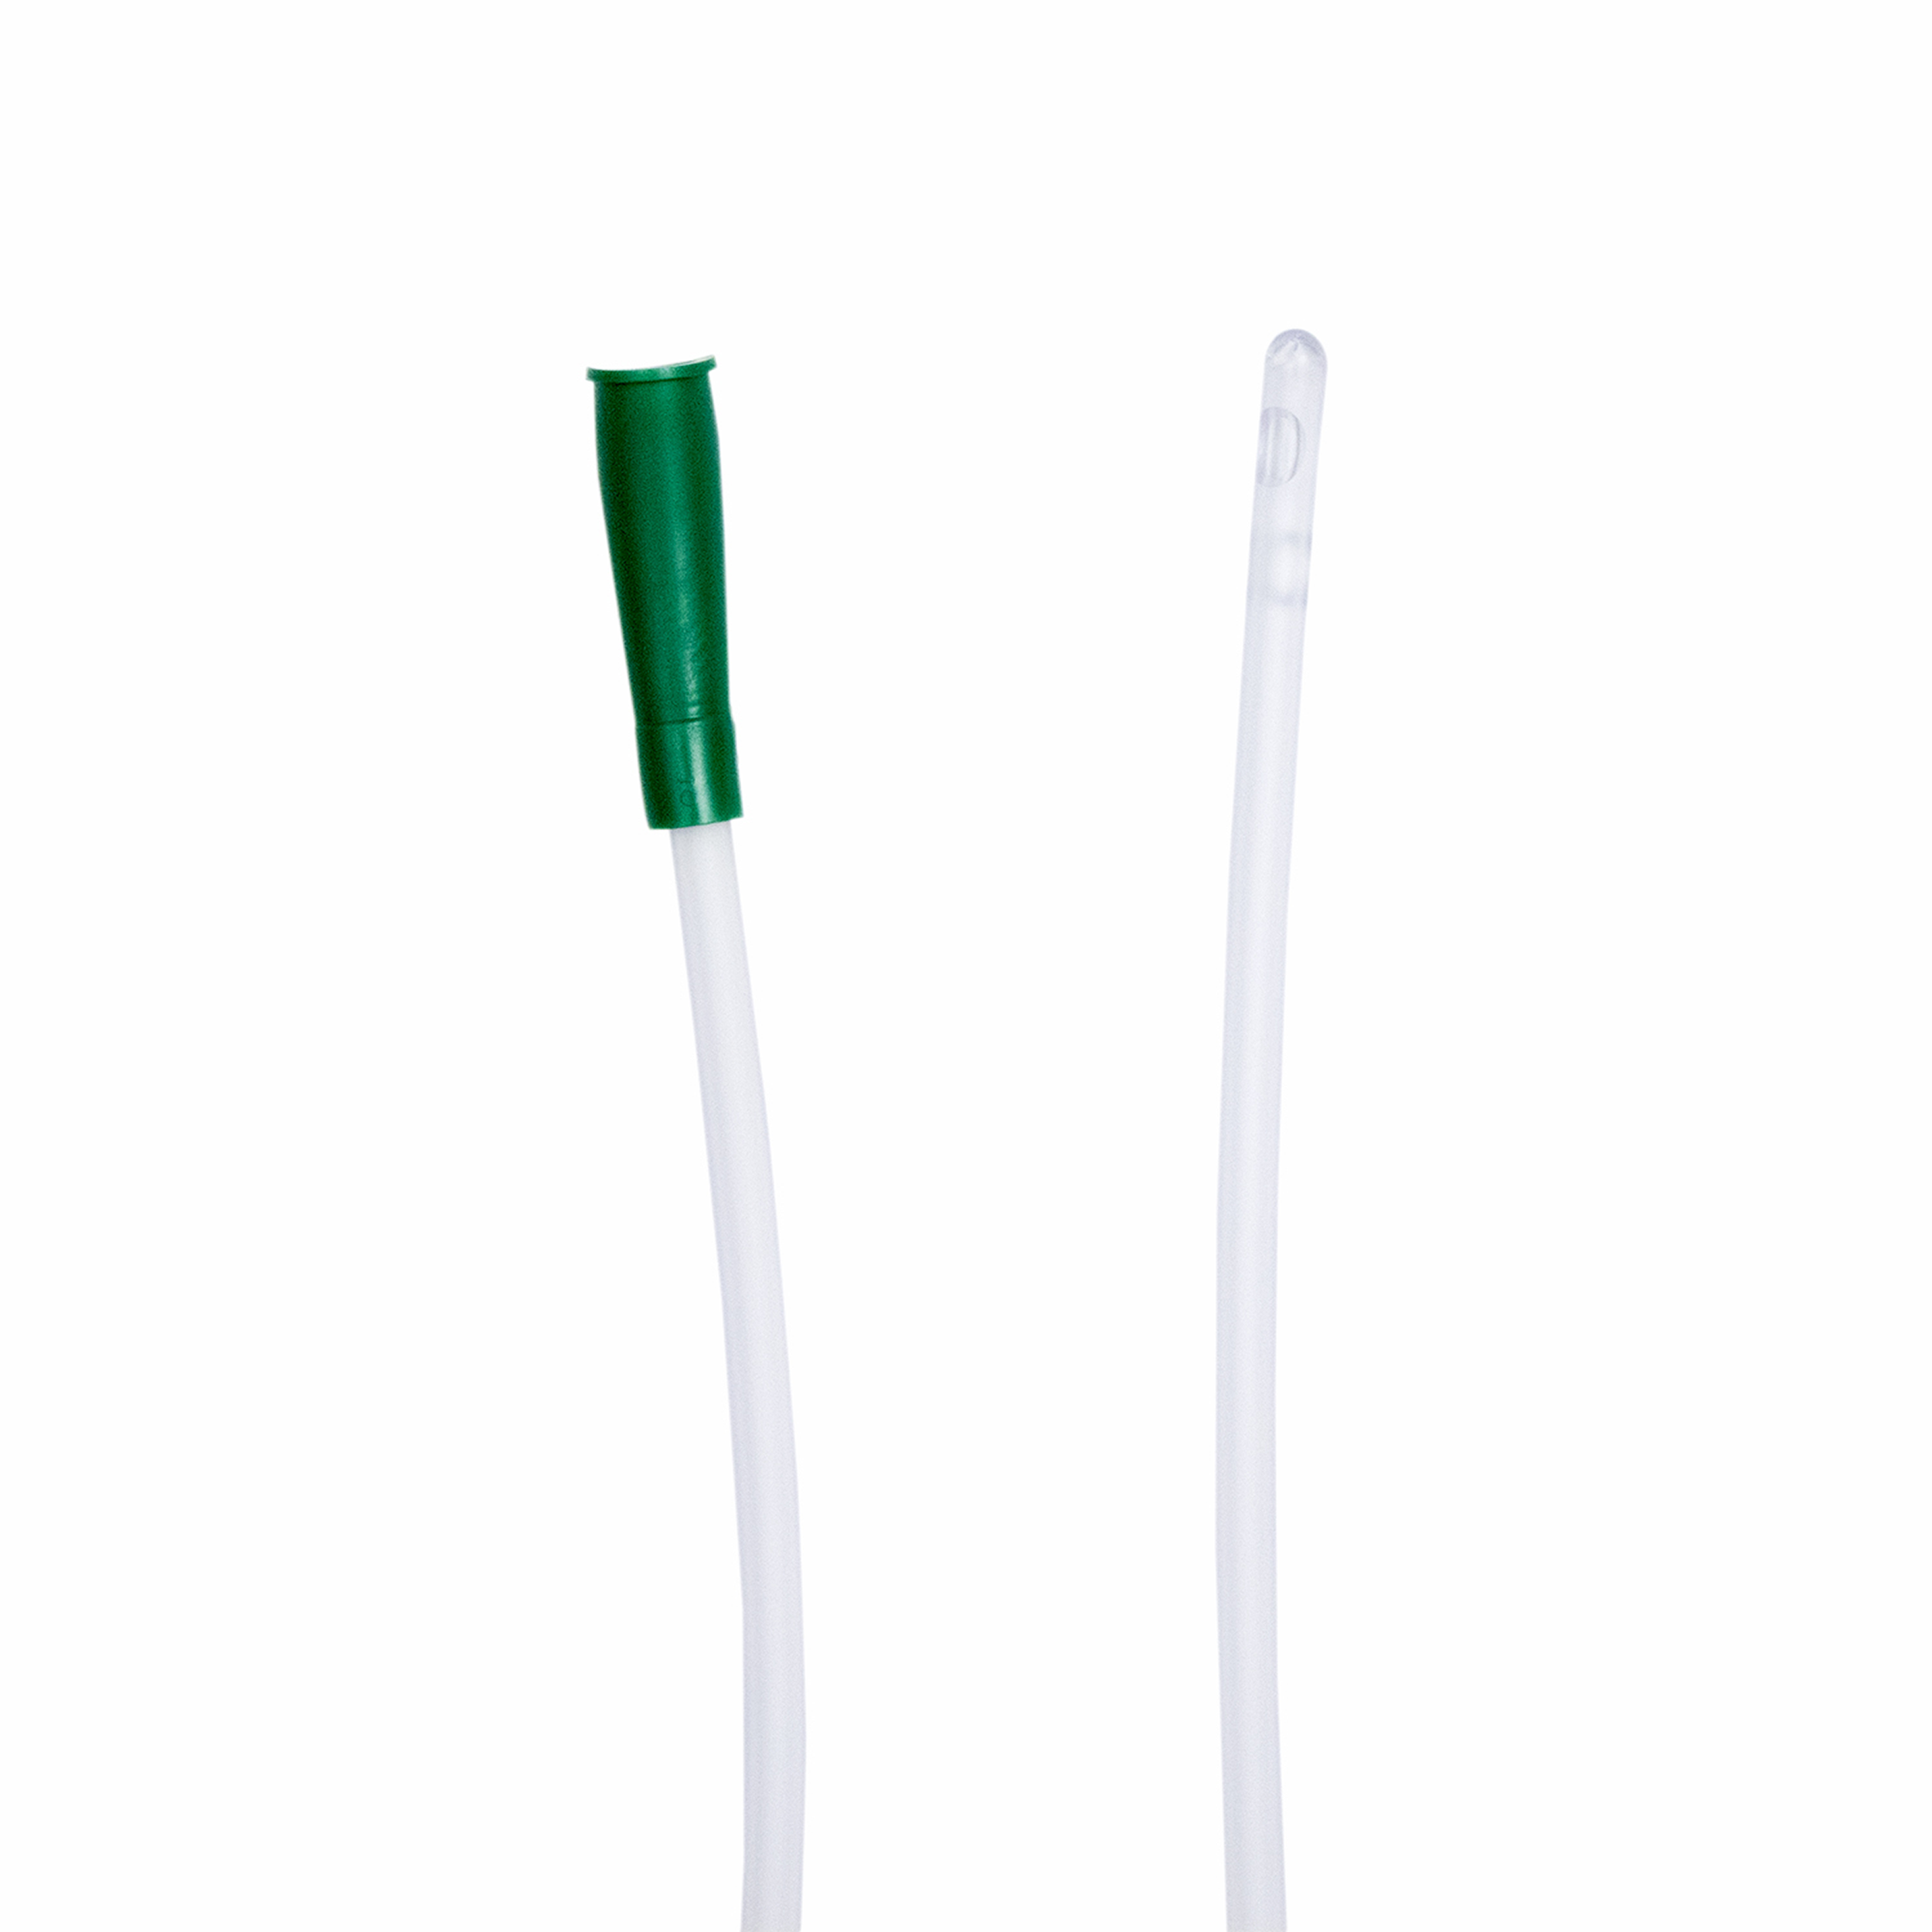 Intermittent Catheter (Female) 14Fr, Sterile Green